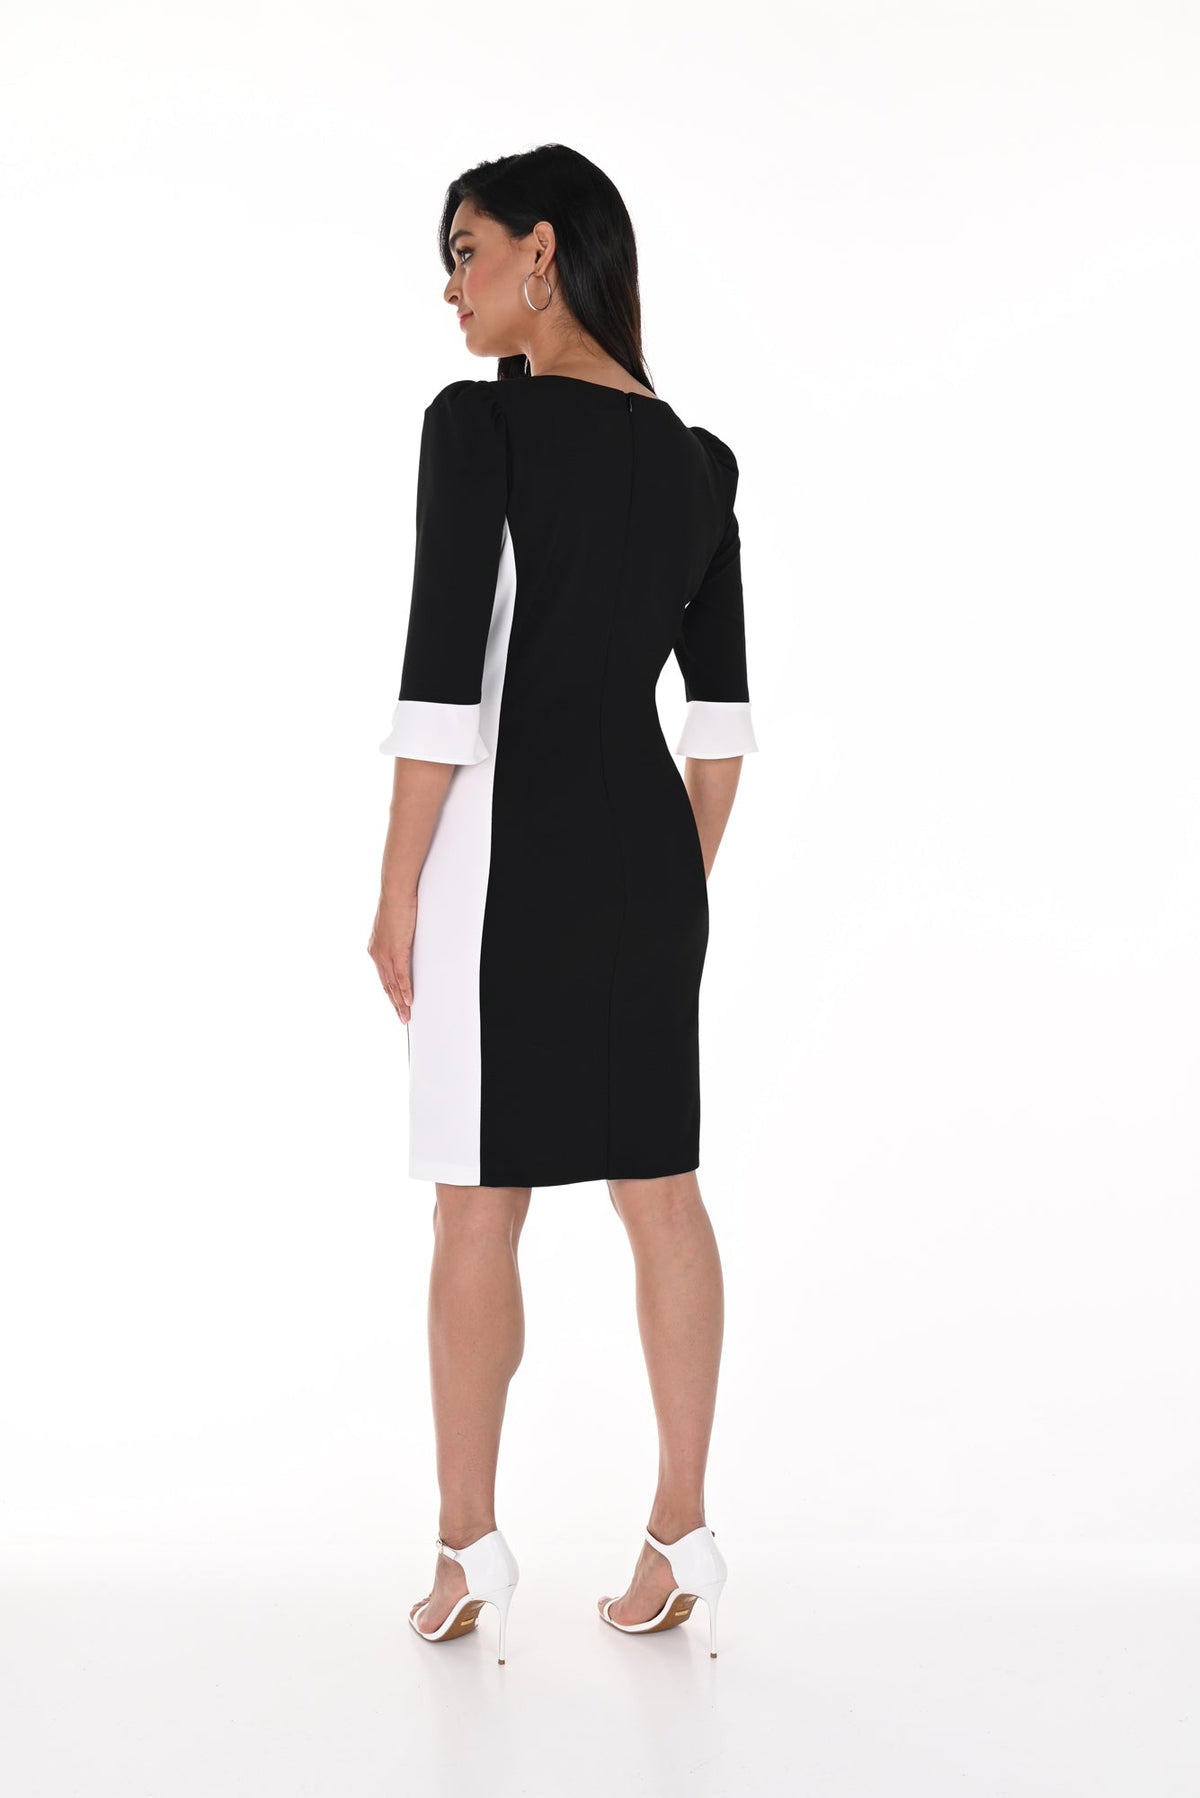 Robe pour femme par Frank Lyman | 246124 BLACK/OFF WHITE | Boutique Vvög, vêtements mode pour homme et femme